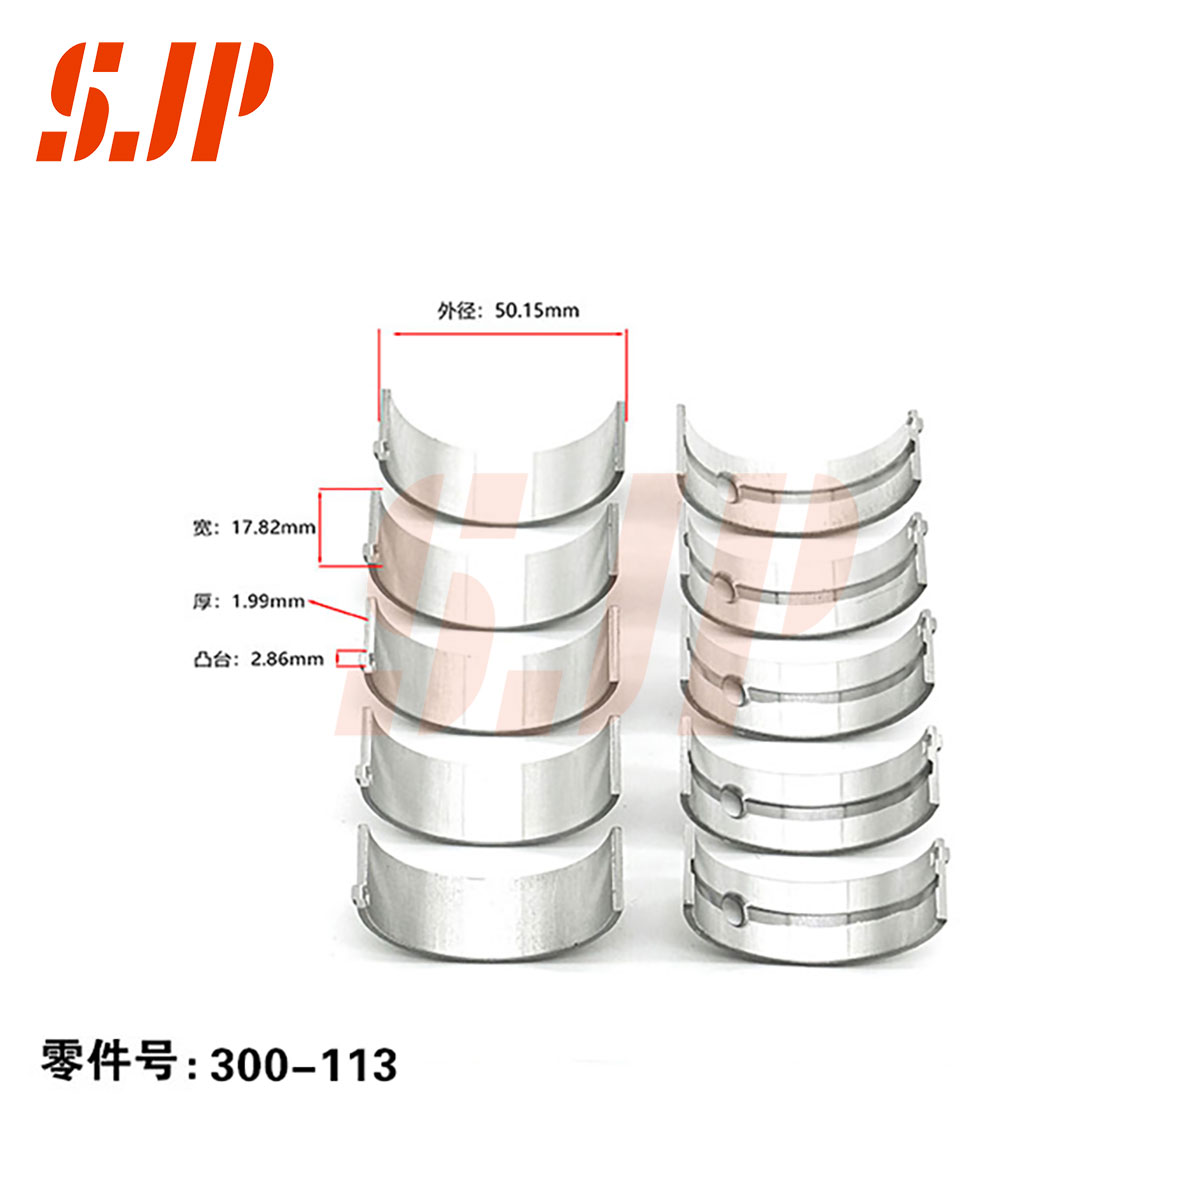 SJ-300-113 Main Bearing Set For G13B SUZUKI Swift 1.3